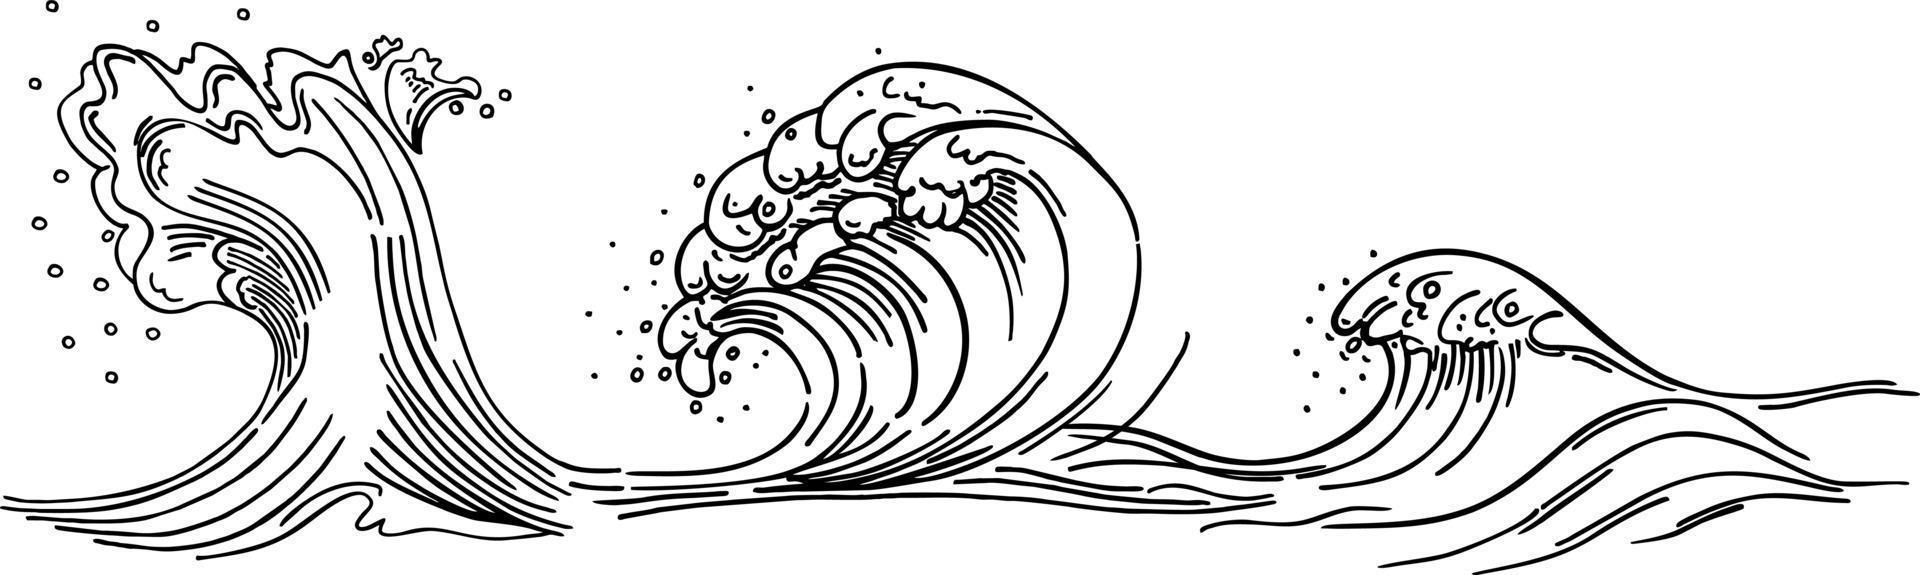 contorno dell'onda del mare. cresta dell'onda del mare. schizzo disegnato a mano. illustrazione vettoriale monocromatica lineare.